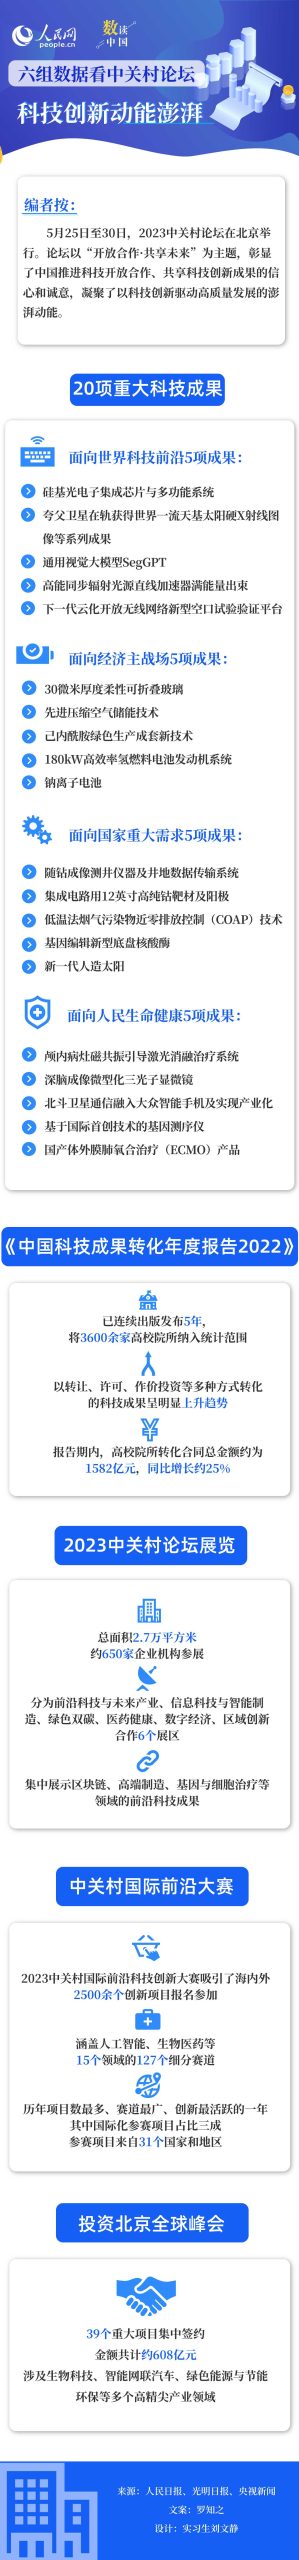 数读中国 | 6组数据看中关村论坛科技创新动能澎湃-精研拍拍网